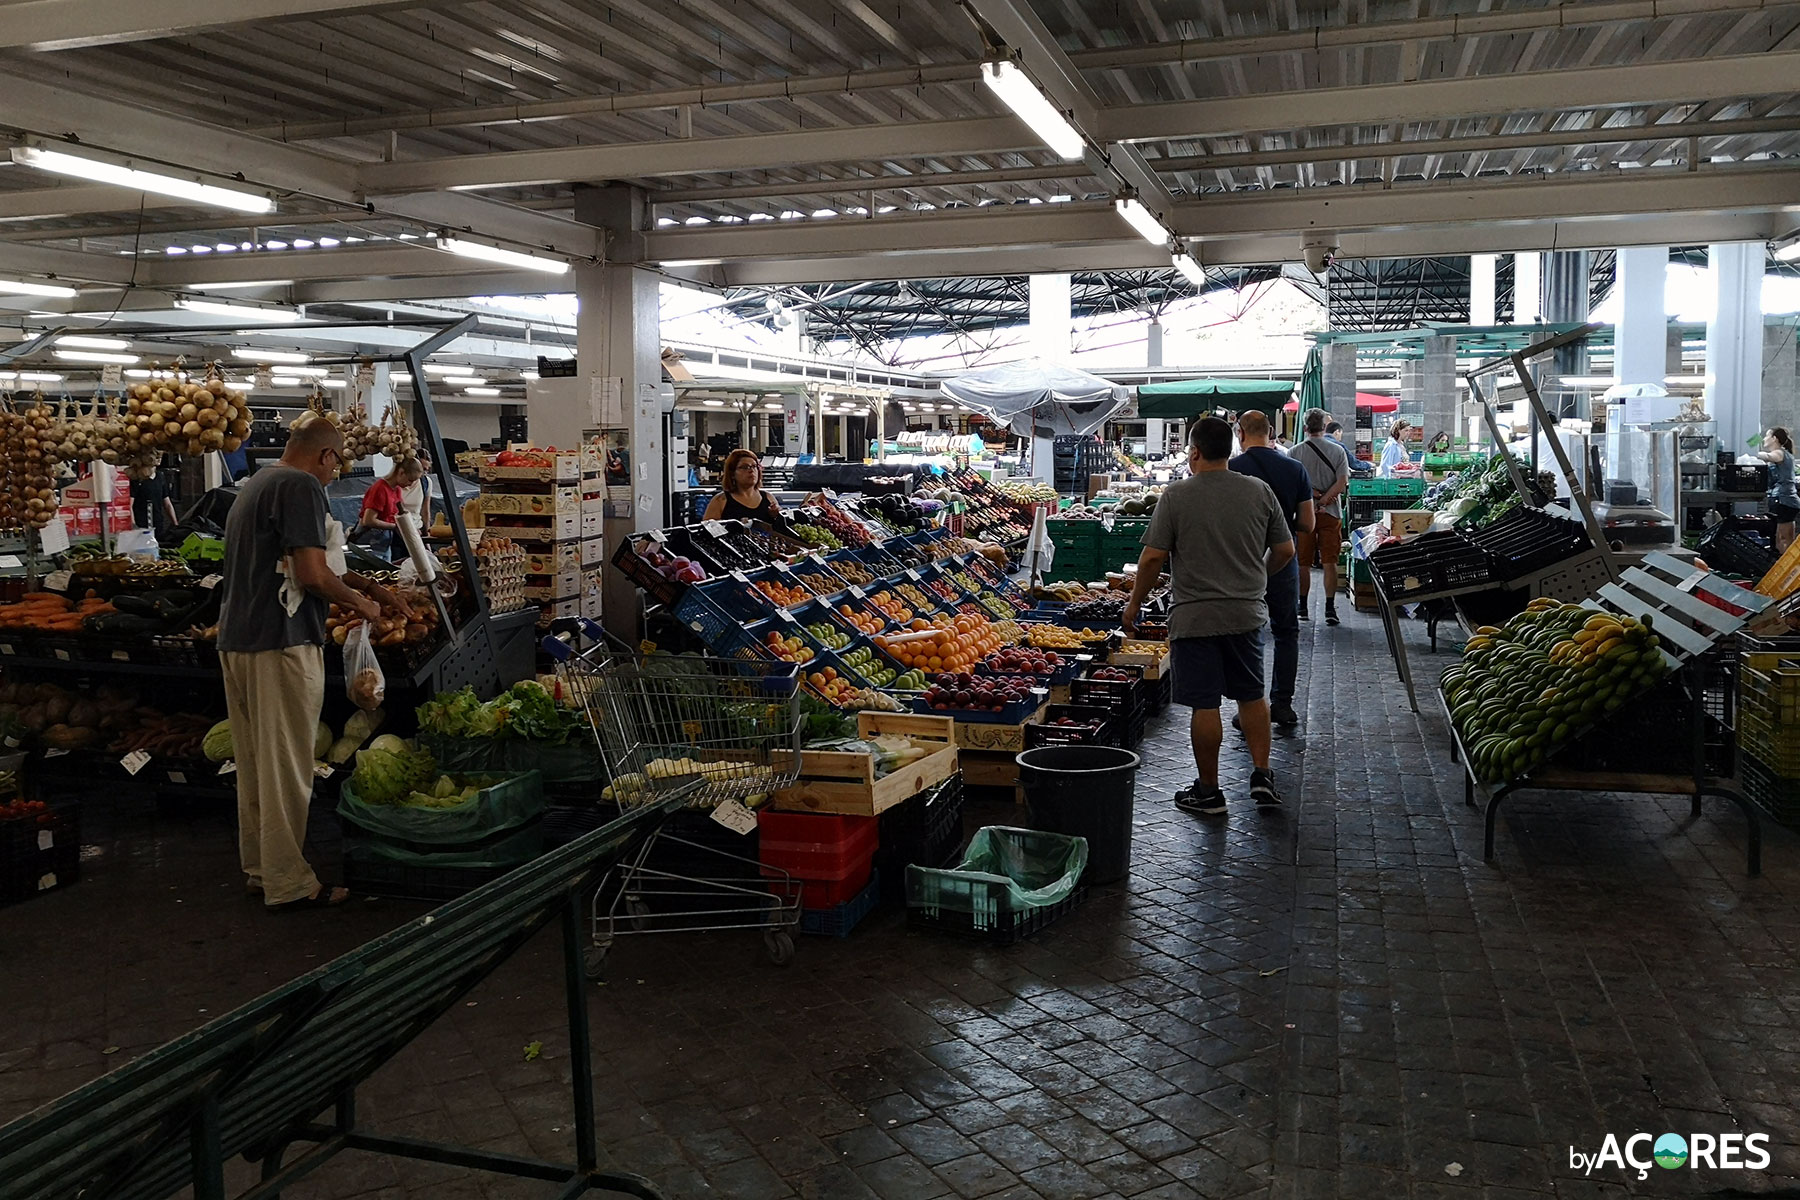 Mercado da Graça - Ponta Delgada, São Miguel - Açores